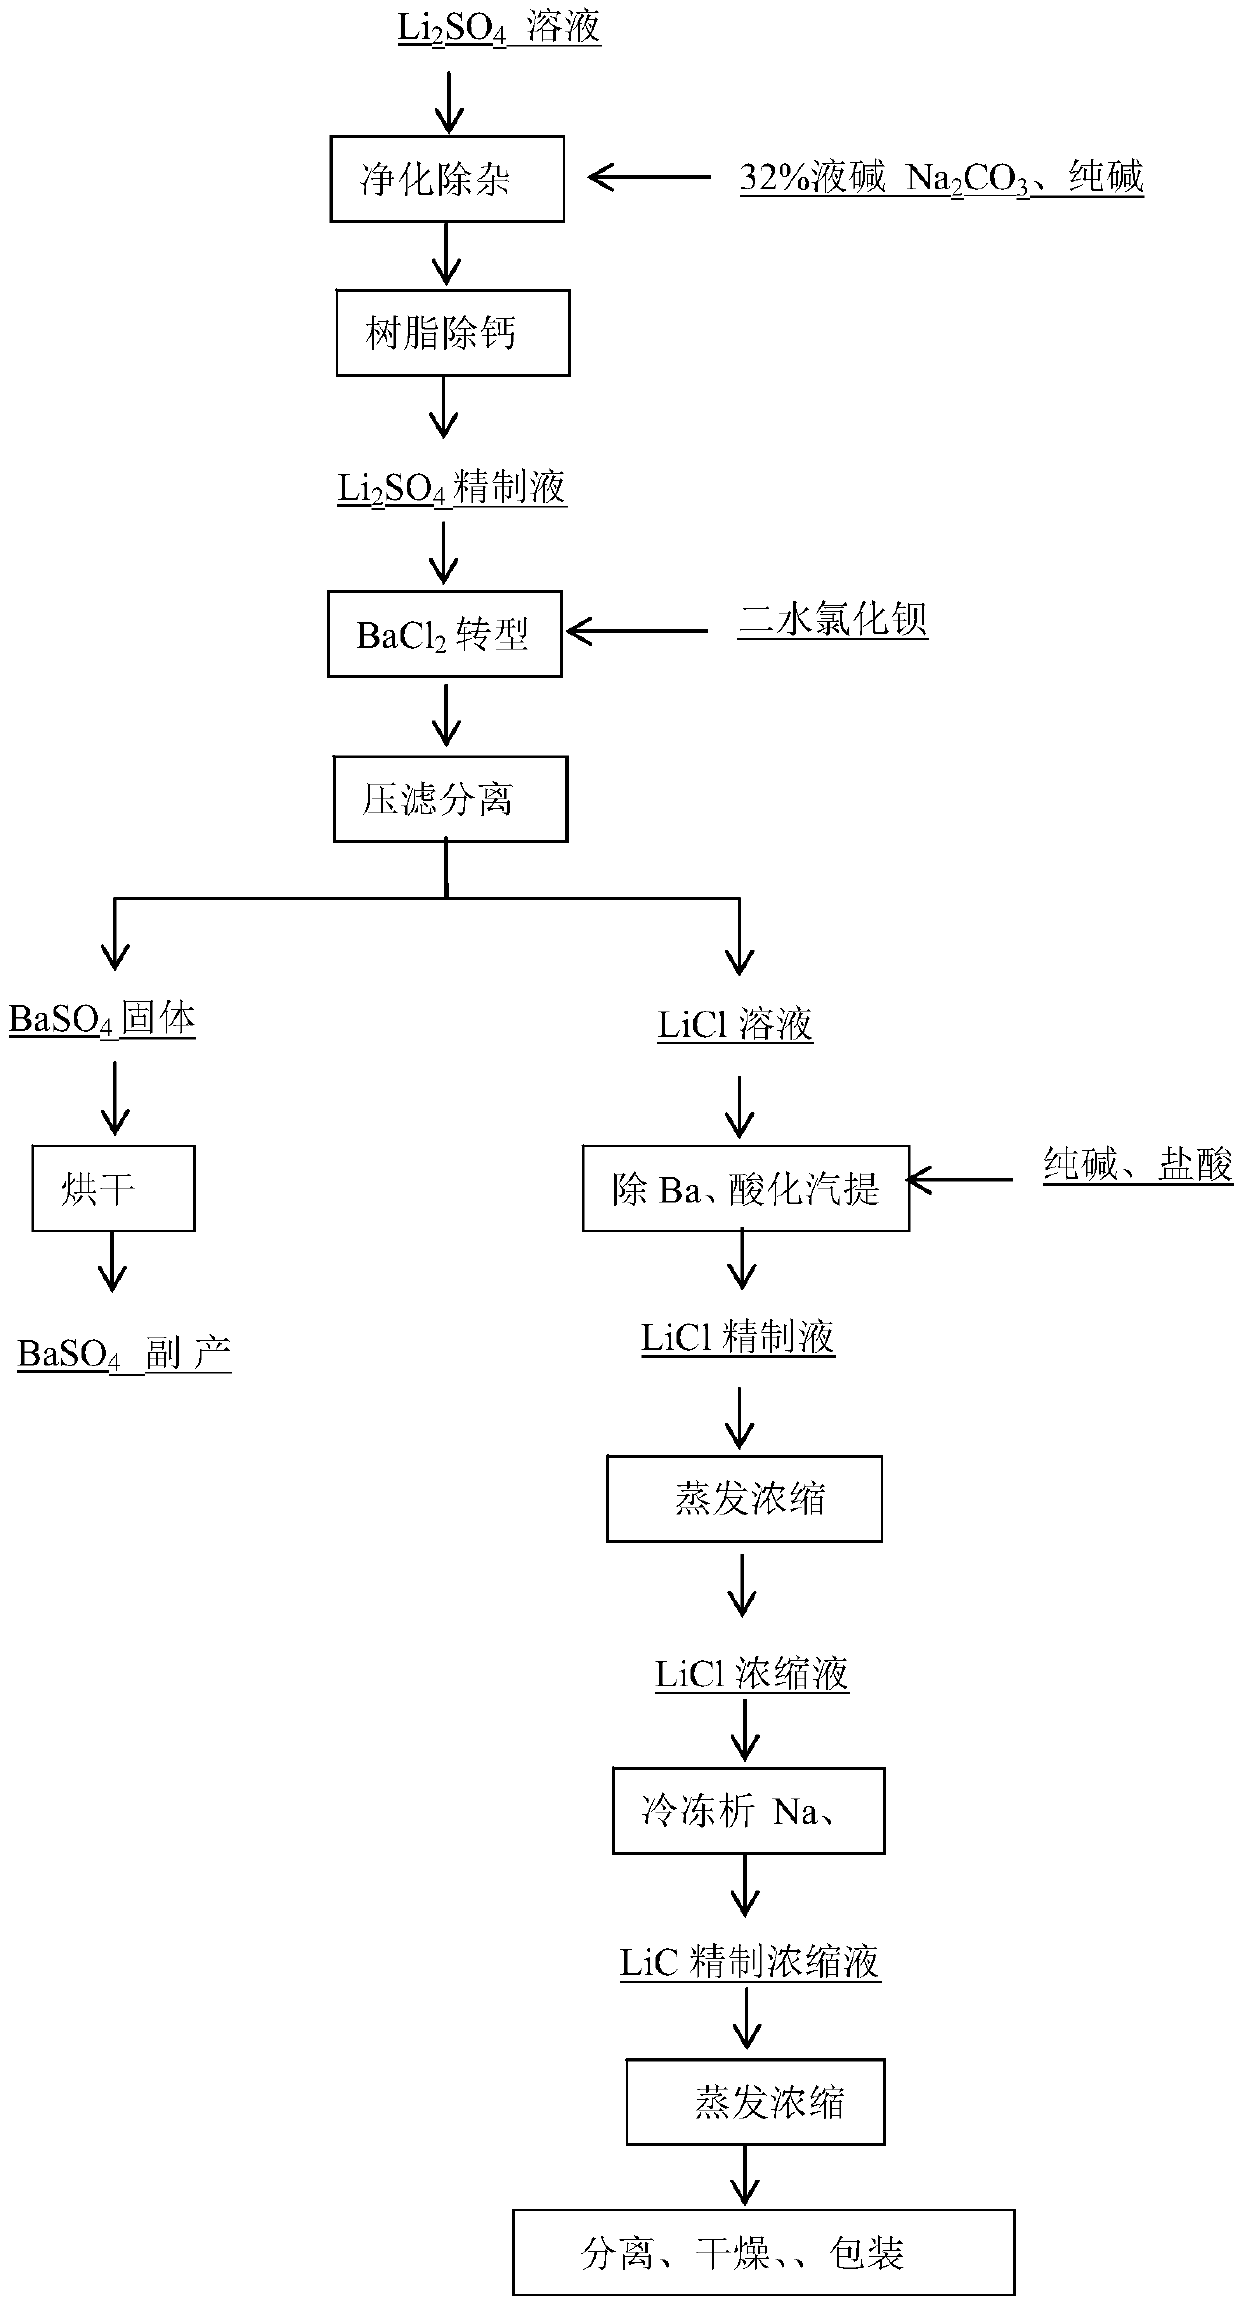 Method for preparation of battery grade lithium chloride from spodumene leachate